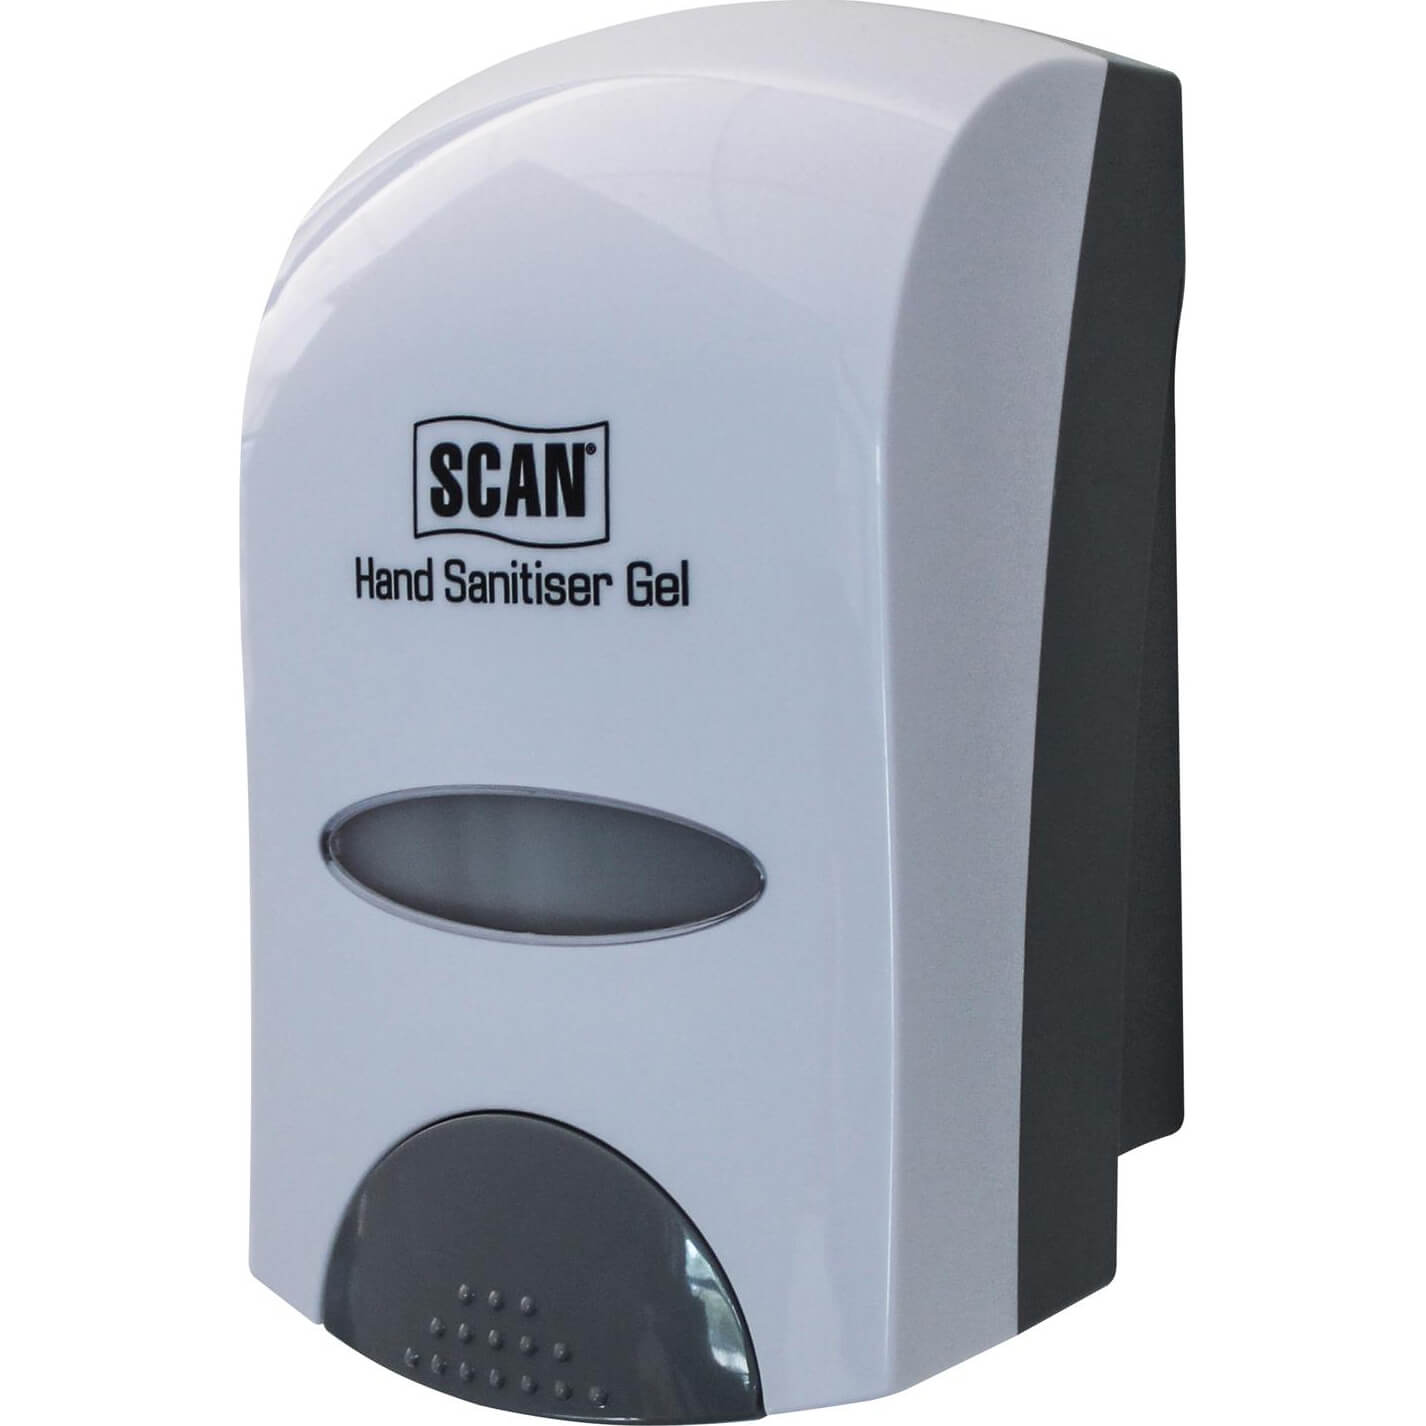 Image of Scan Hand Sanitiser Gel Dispenser